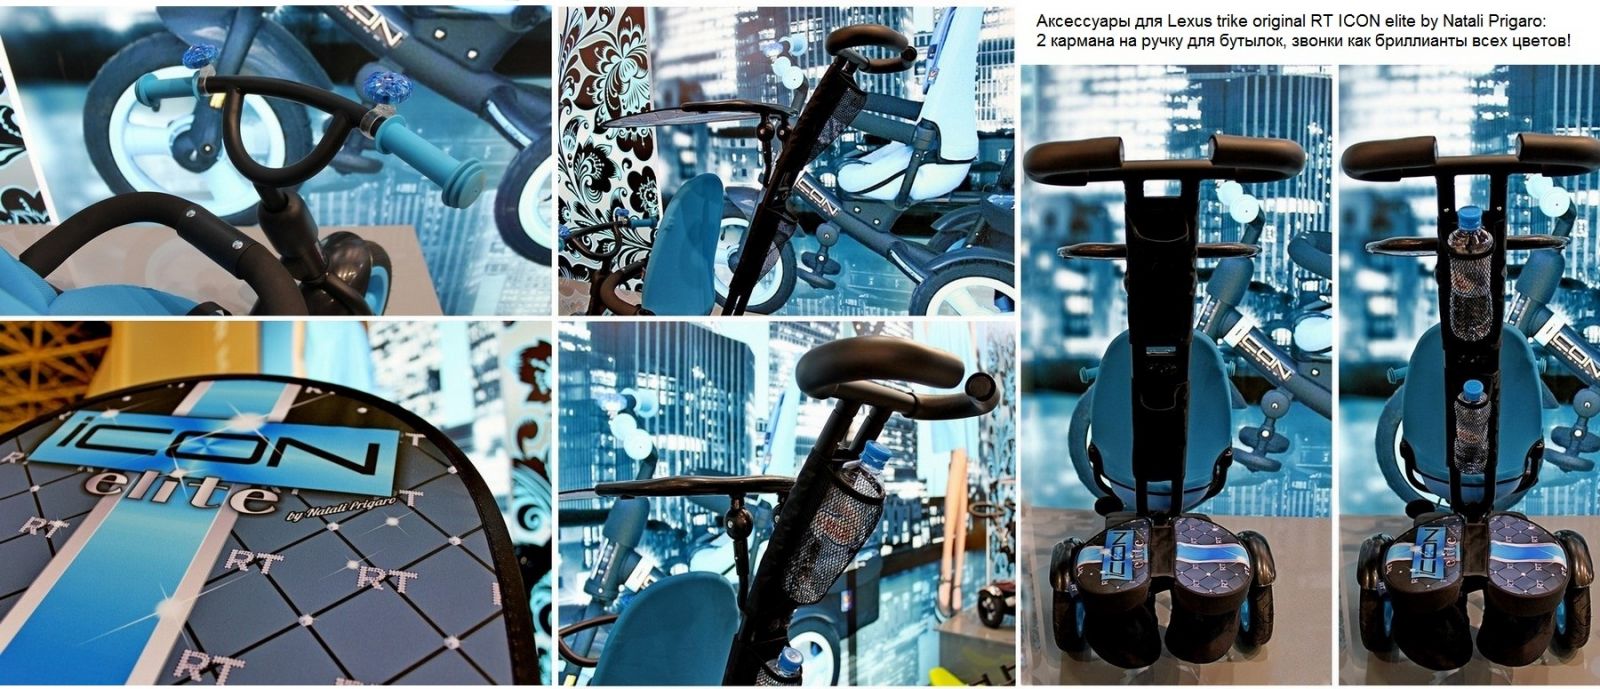 Оригинальный трёхколёсный велосипед Lexus trike original RT ICON elite by Natali Prigaro Blue Topaz 2015